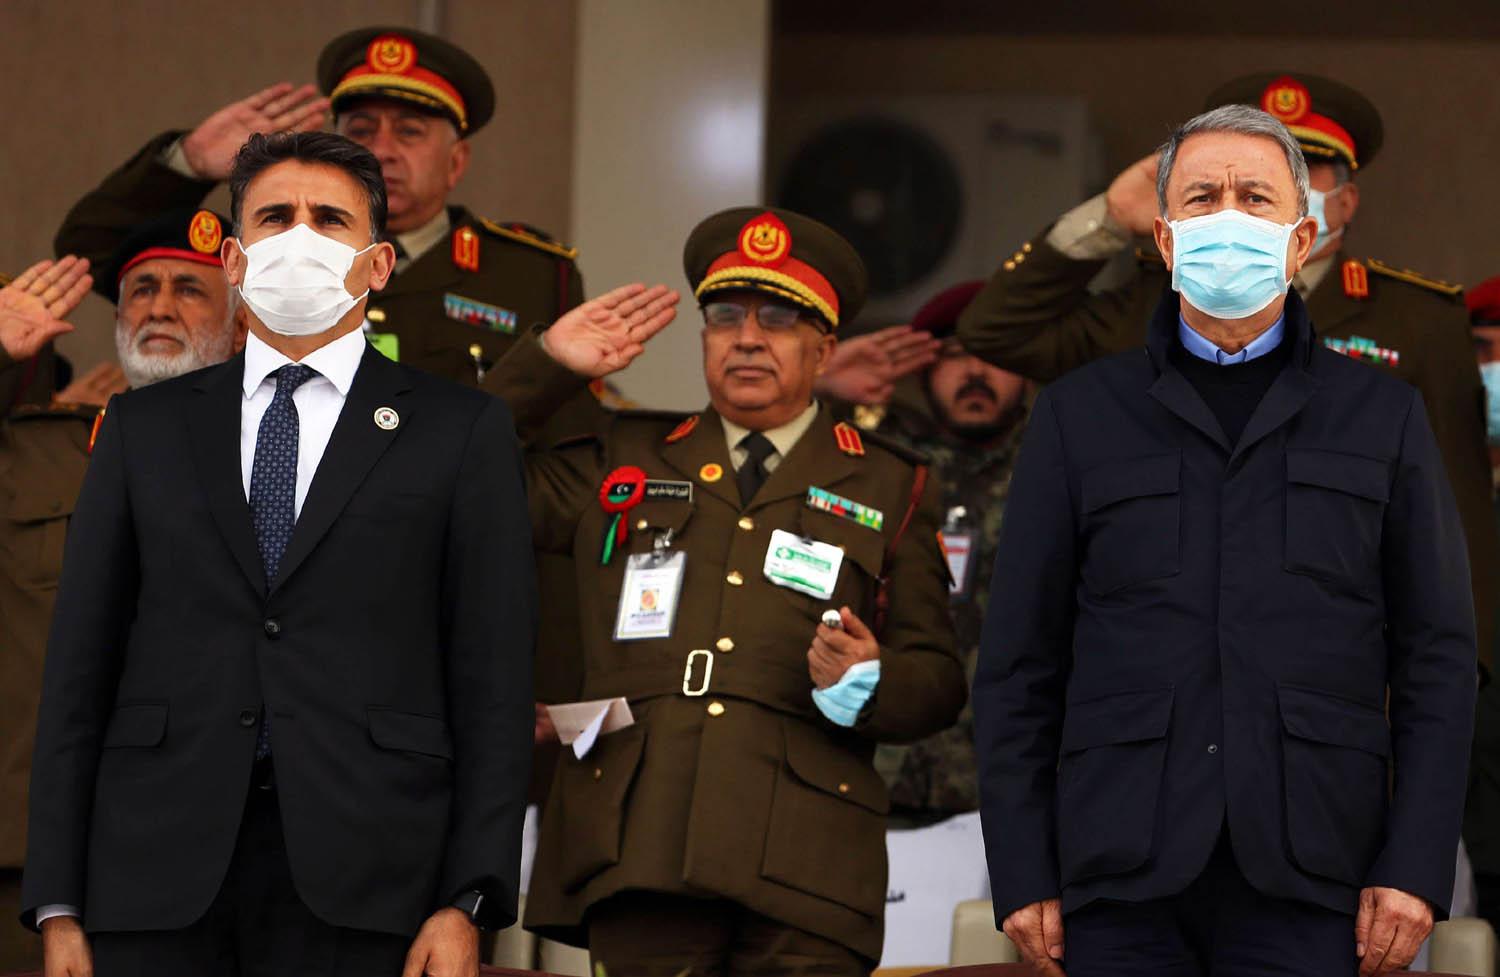 وزير الدفاع التركي خلوصي أكار يستعرض القوات الليبية مع وزير الدفاع الليبي صلاح الدين النمروش